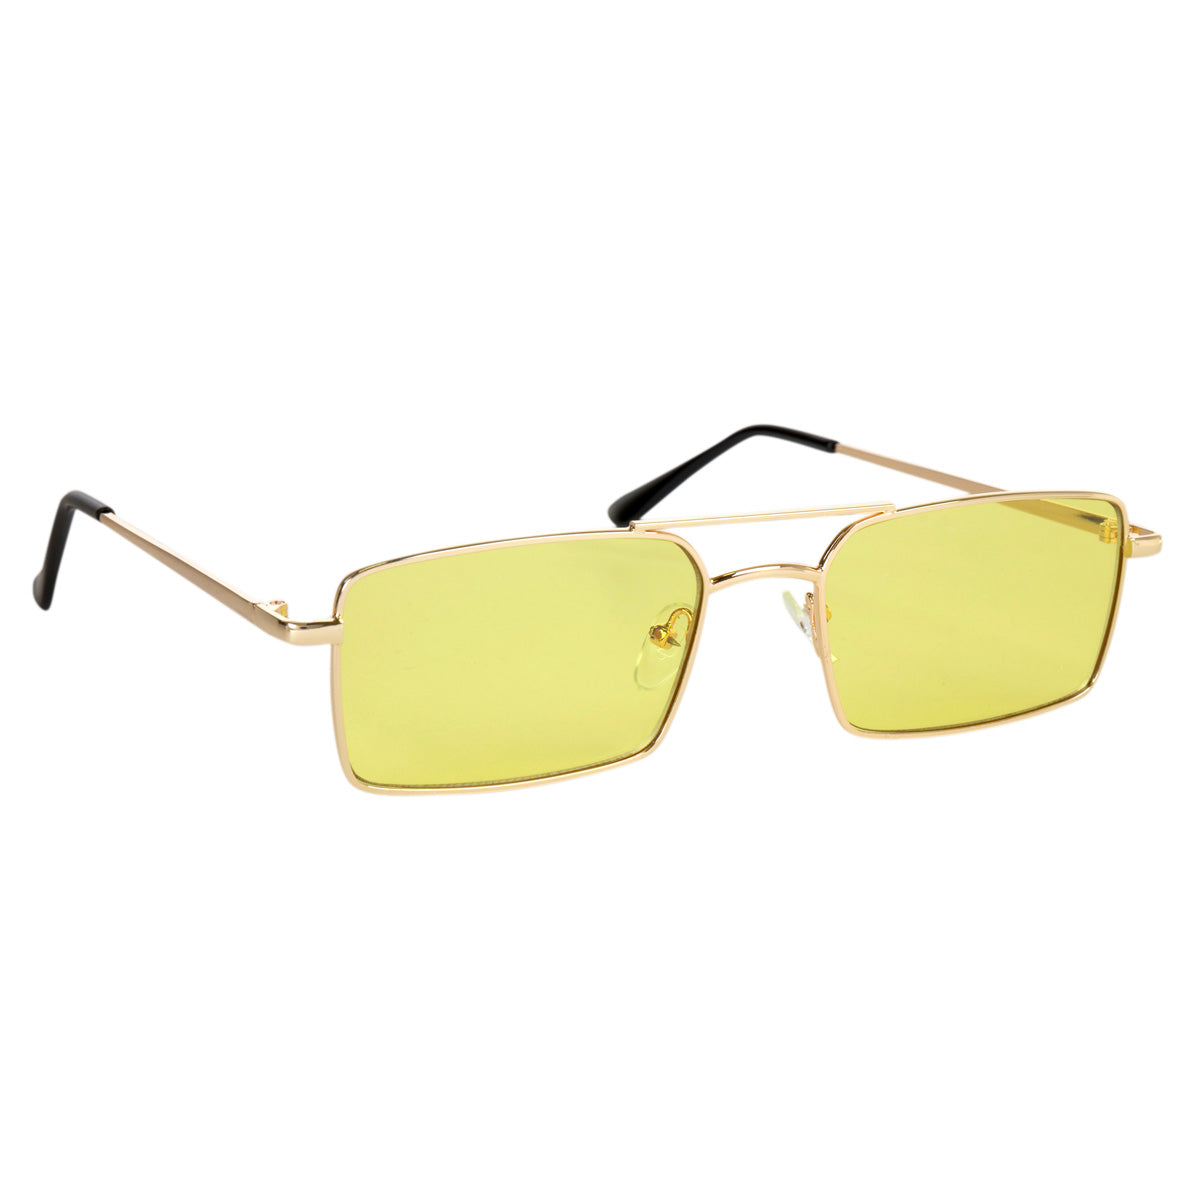 Low square sunglasses